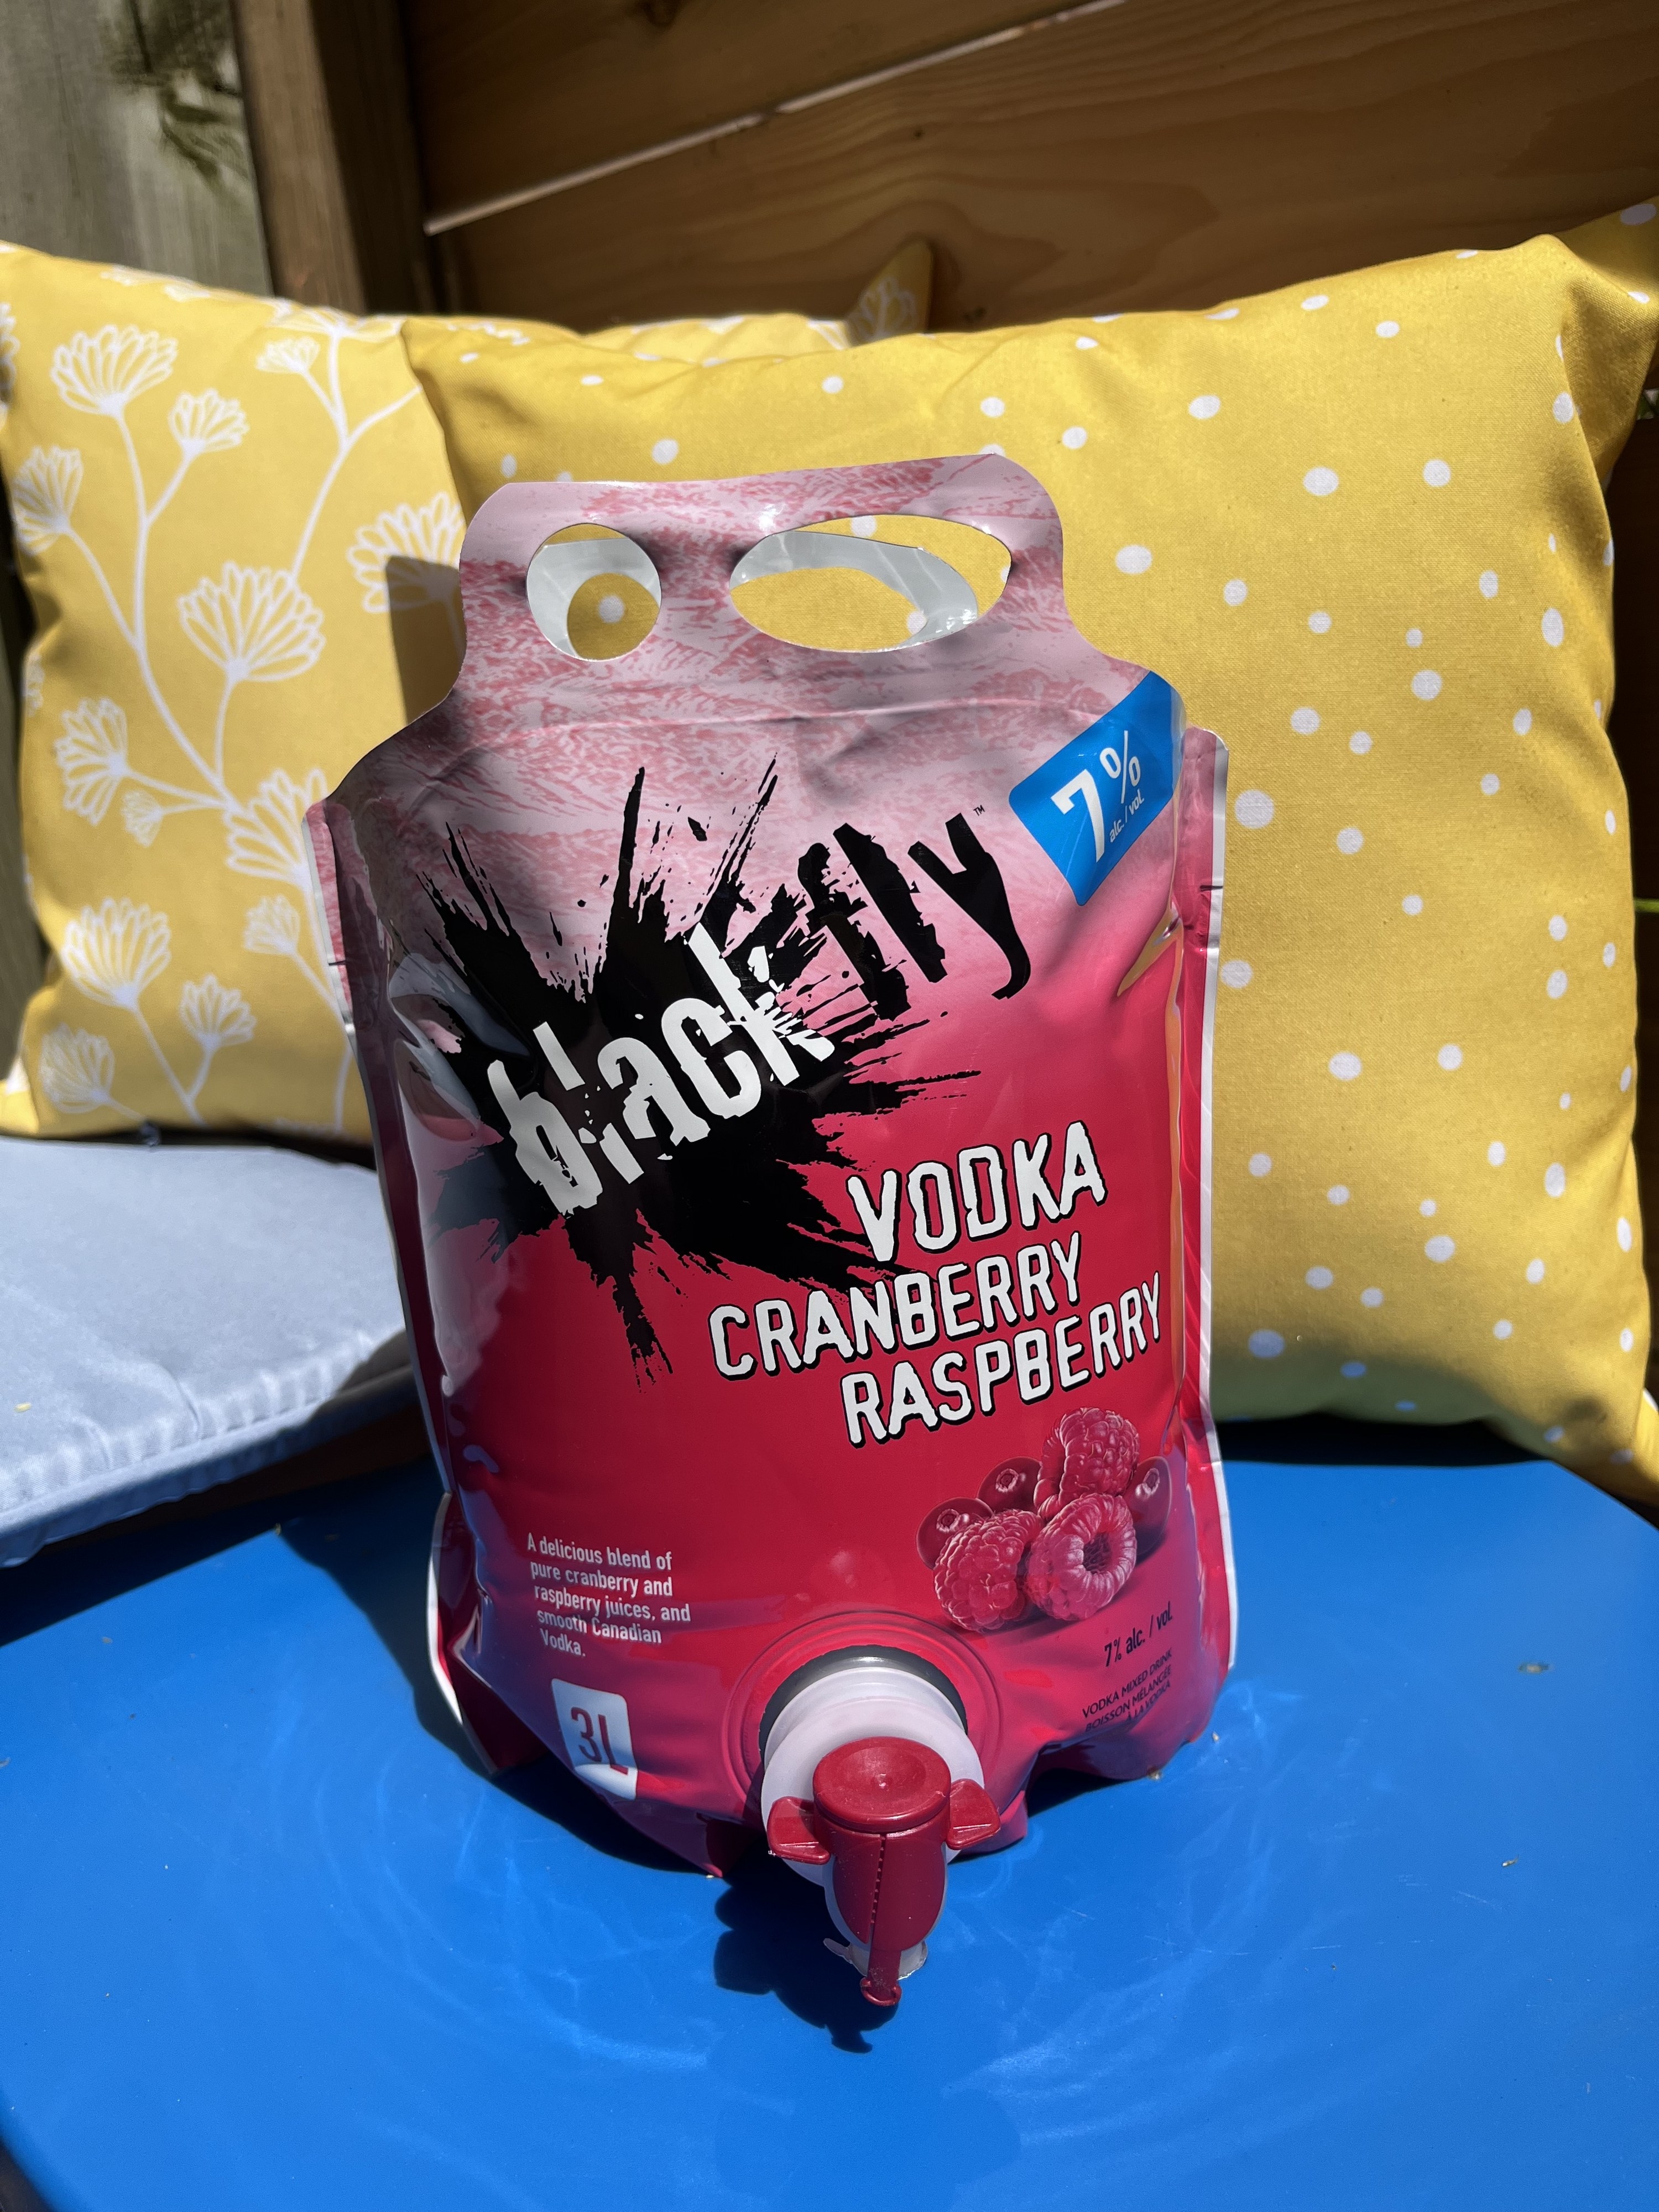 blackberry vodka cranberry raspberry